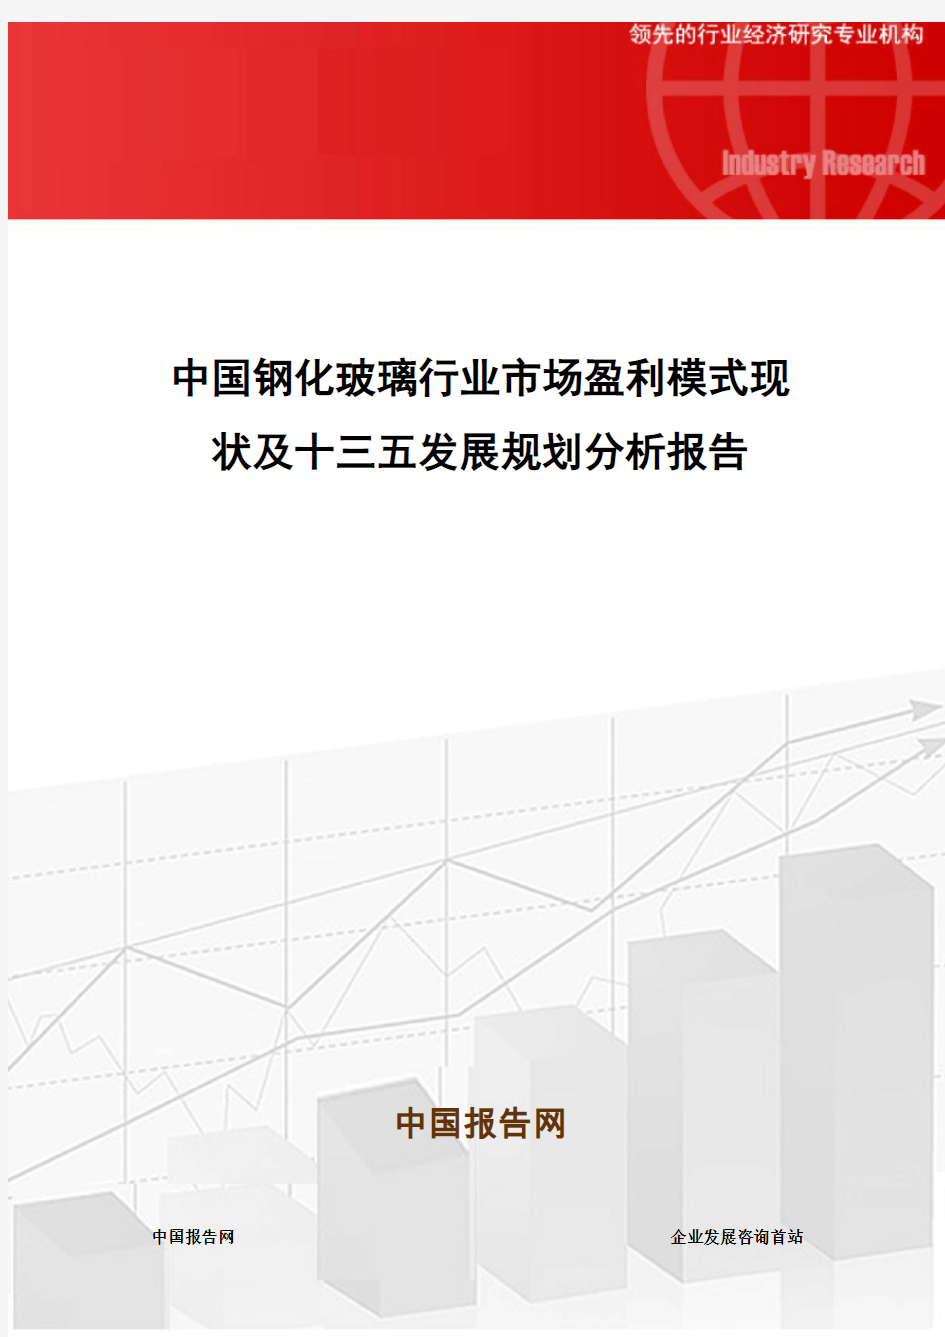 中国钢化玻璃行业市场盈利模式现状及十三五发展规划分析报告